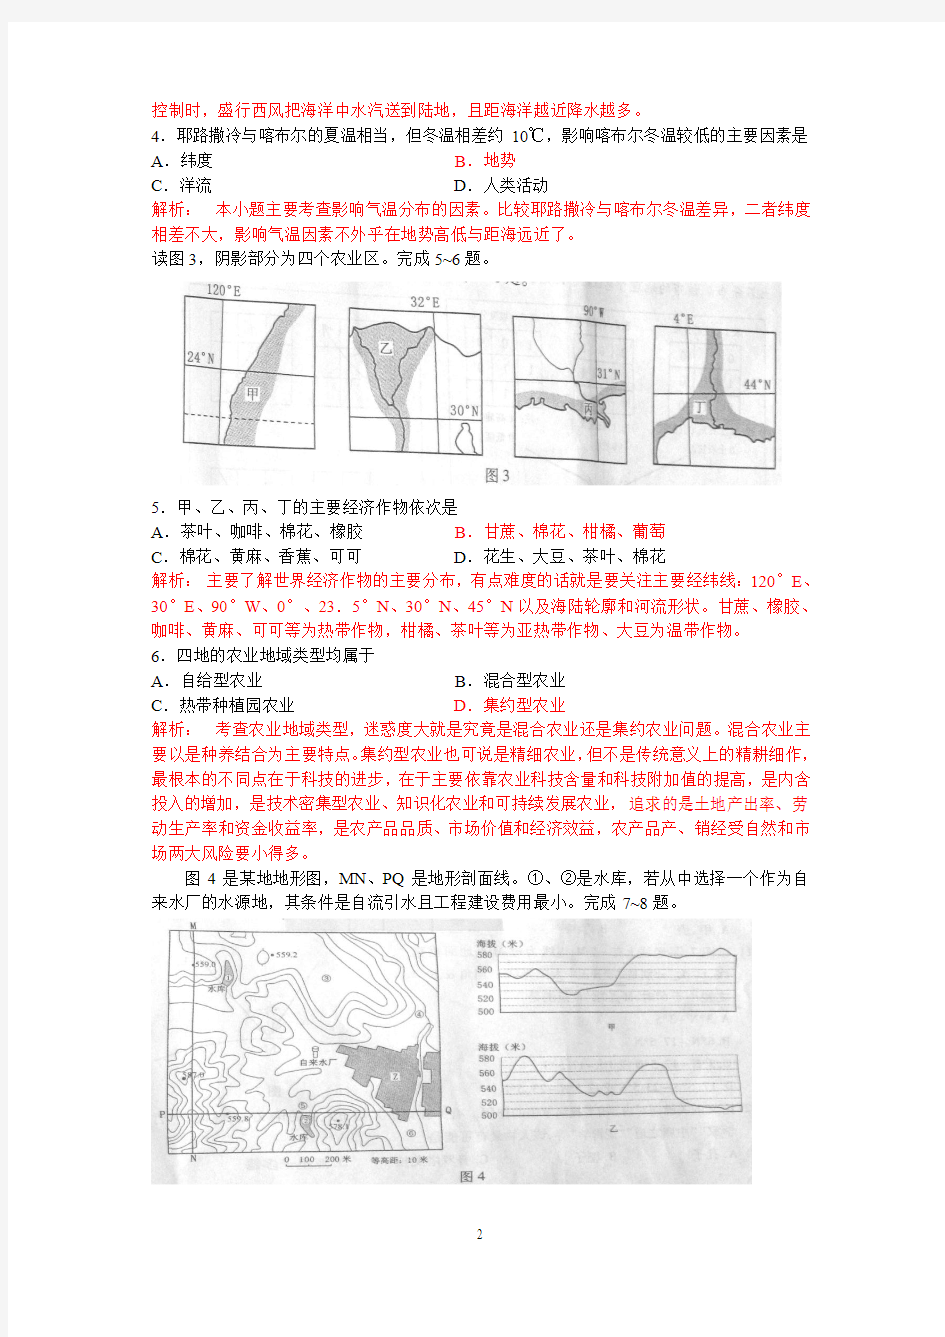 【地理】2010年高考真题——文综地理(浙江卷)解析版